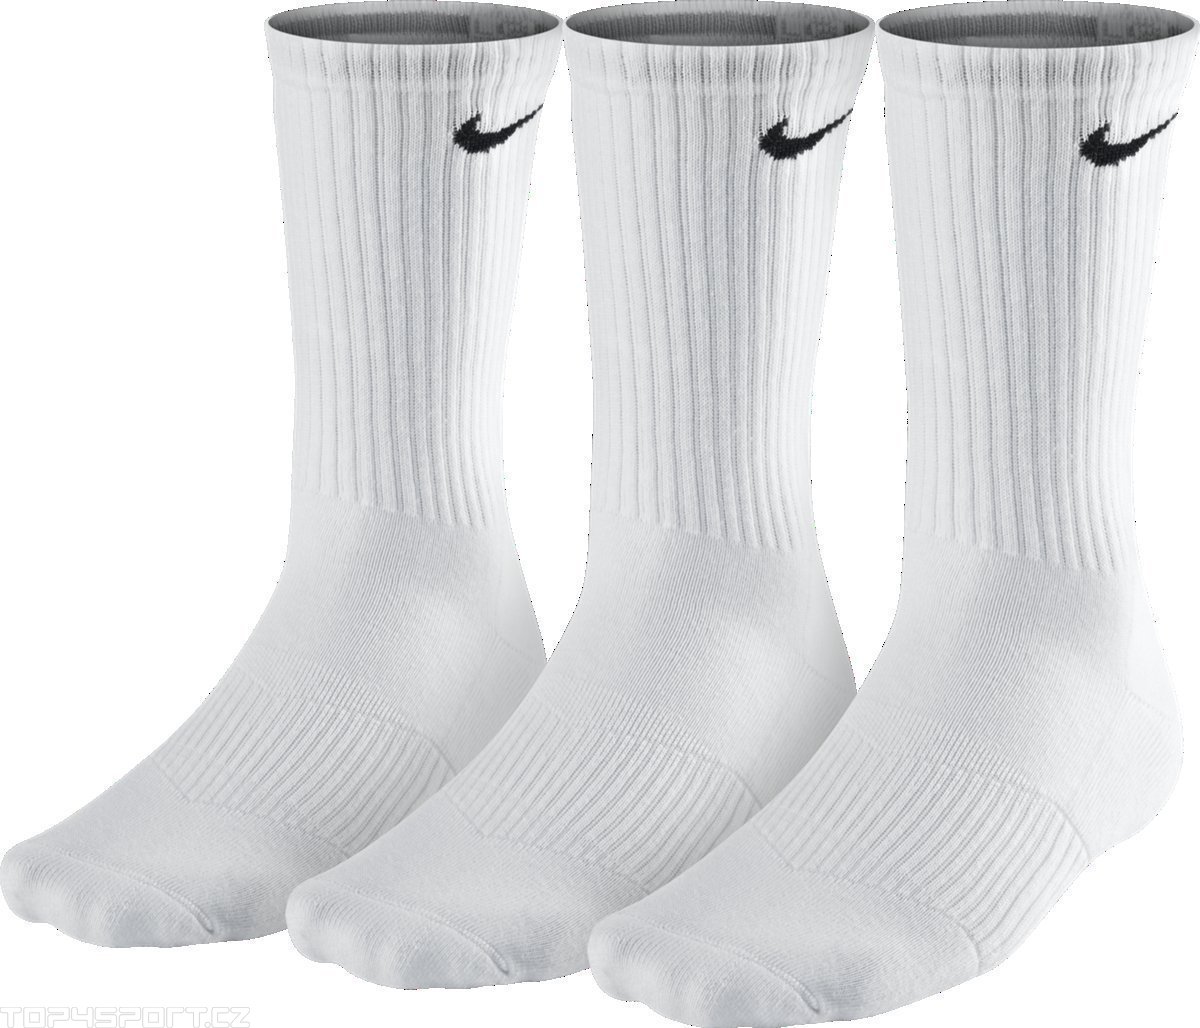 3PPK CUSHION CREW  - Sportovní ponožky